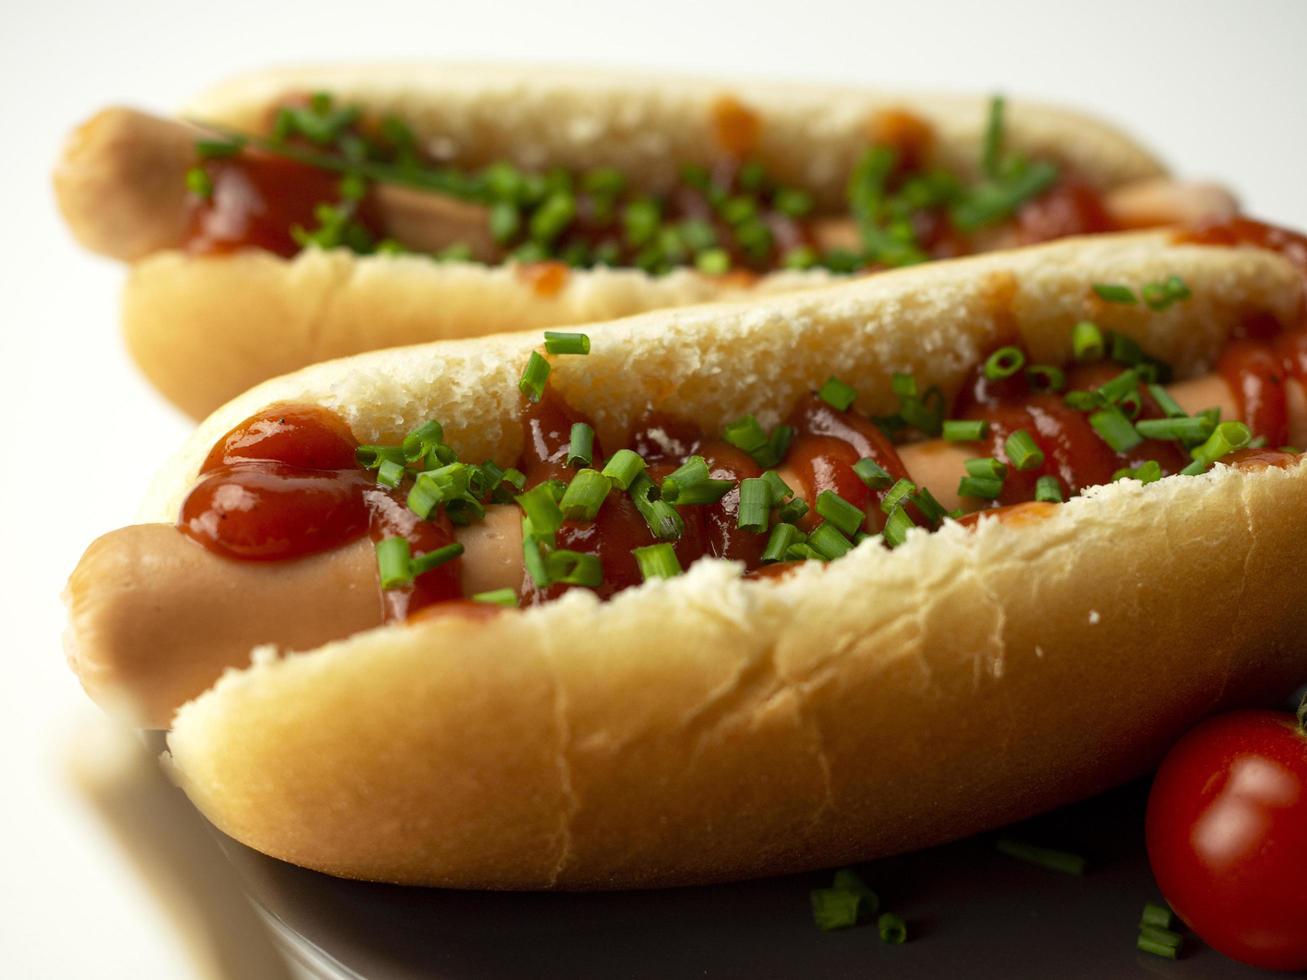 Hot dog with ketchup photo